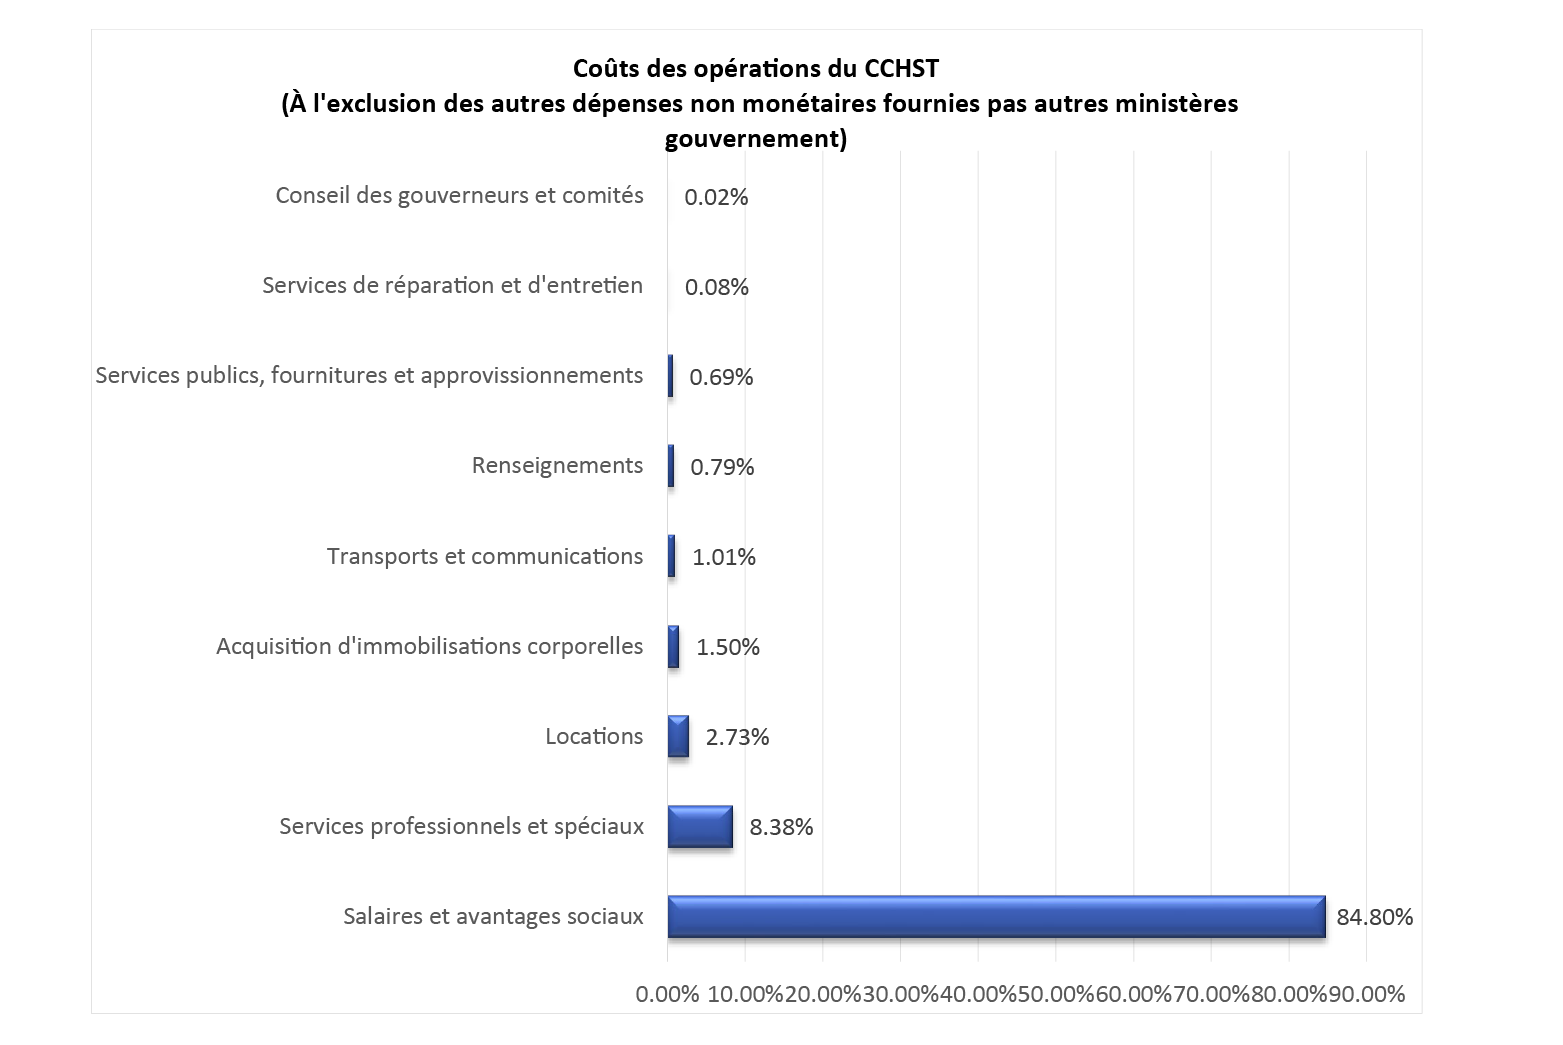 Graphique des Coûts des opérations du CCHST
                          (À l'exclusion des autres dépenses non monétaires fournies pas autres ministères gouvernement)